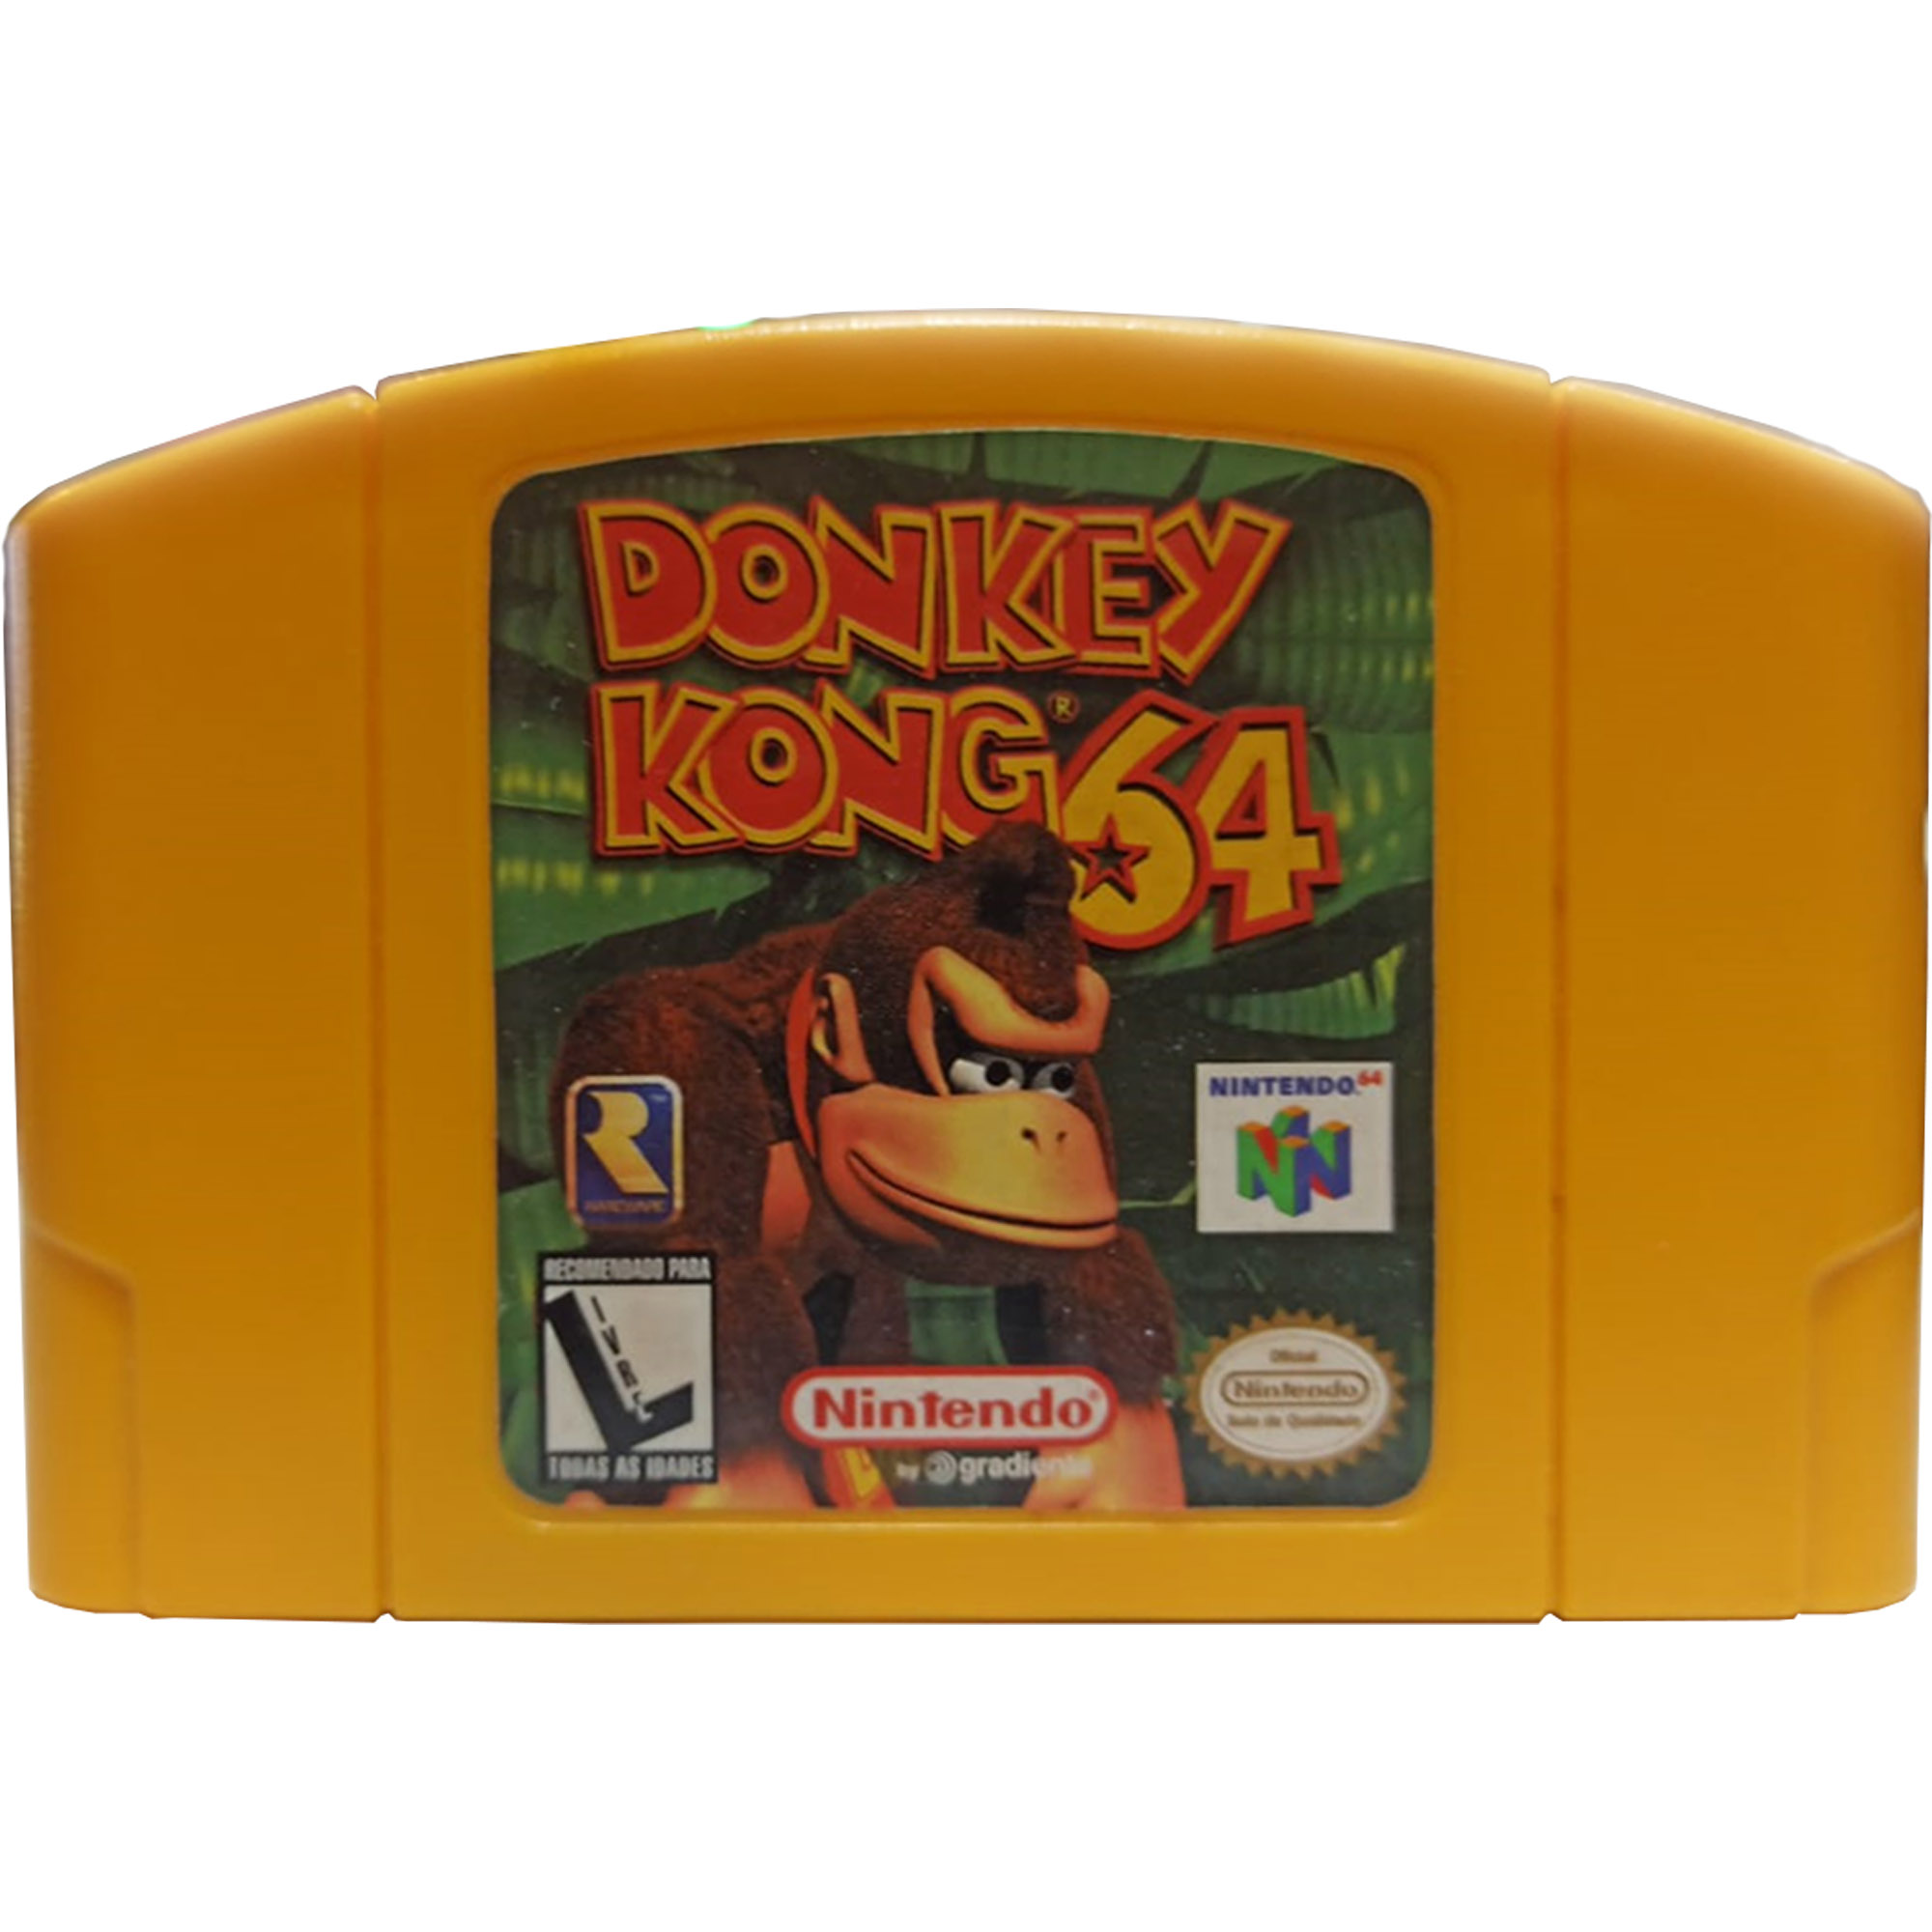 Donkey Kong 64 Edição De Colecionador Com Cartucho De Expansão Incluso - Nintendo 64 Usado